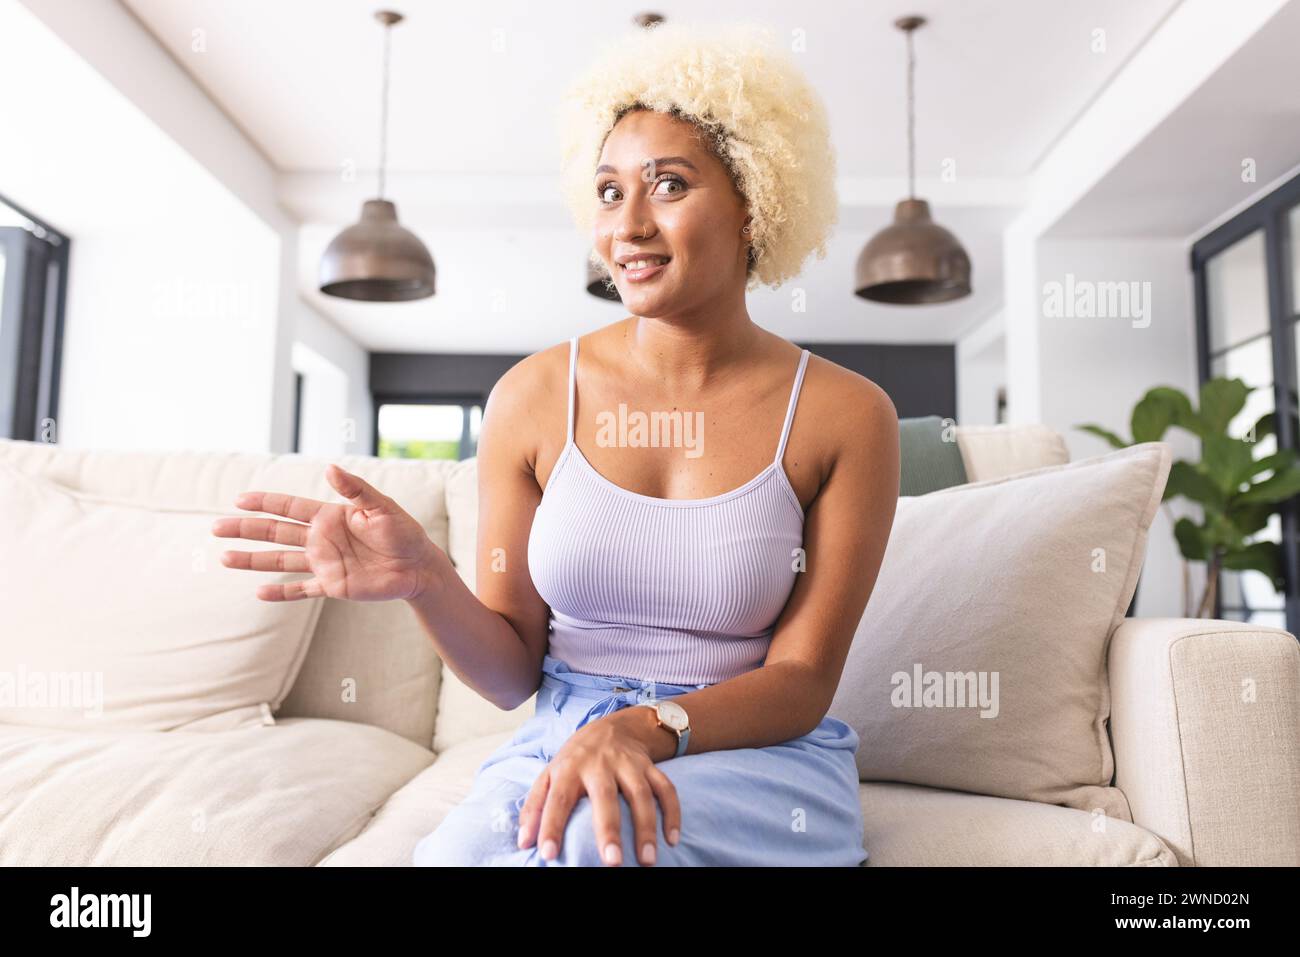 Giovane donna birazziale con capelli biondi ricci seduta sul divano, gestendo durante una videochiamata Foto Stock